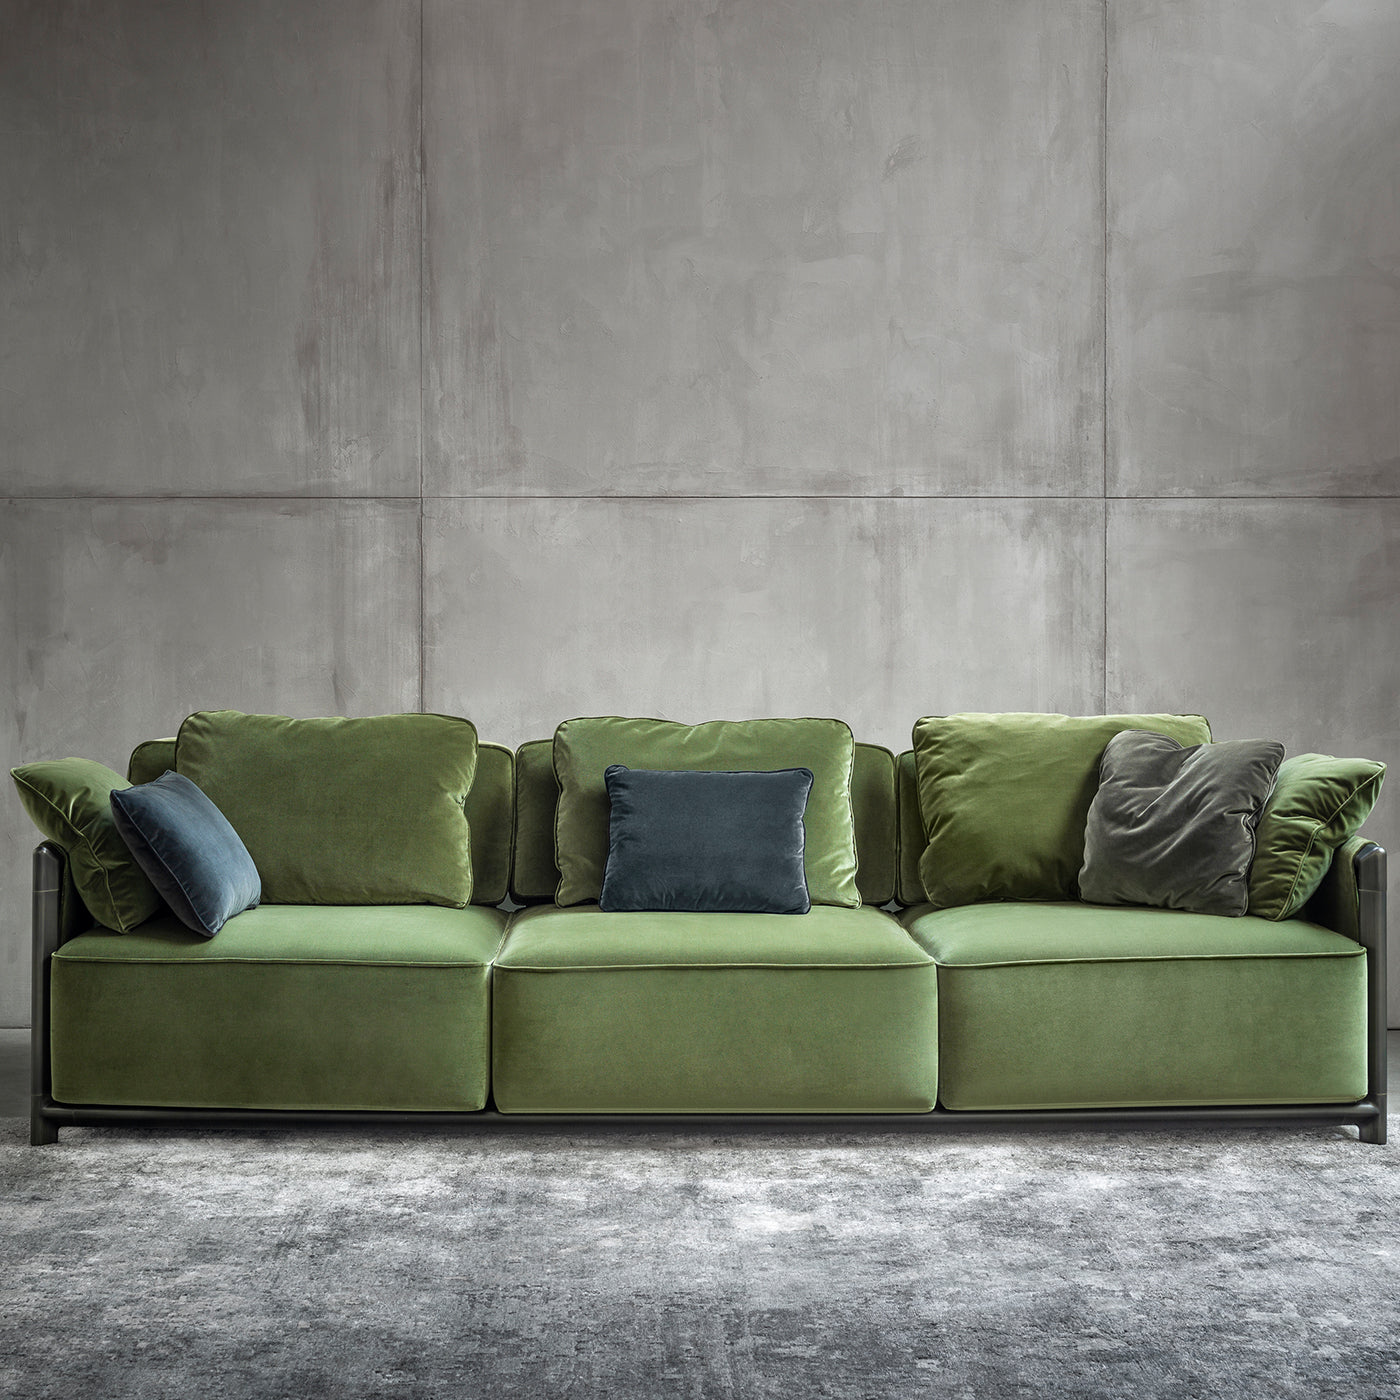 Dodo Green Sofa by Stefano Giovannoni - Alternative view 4